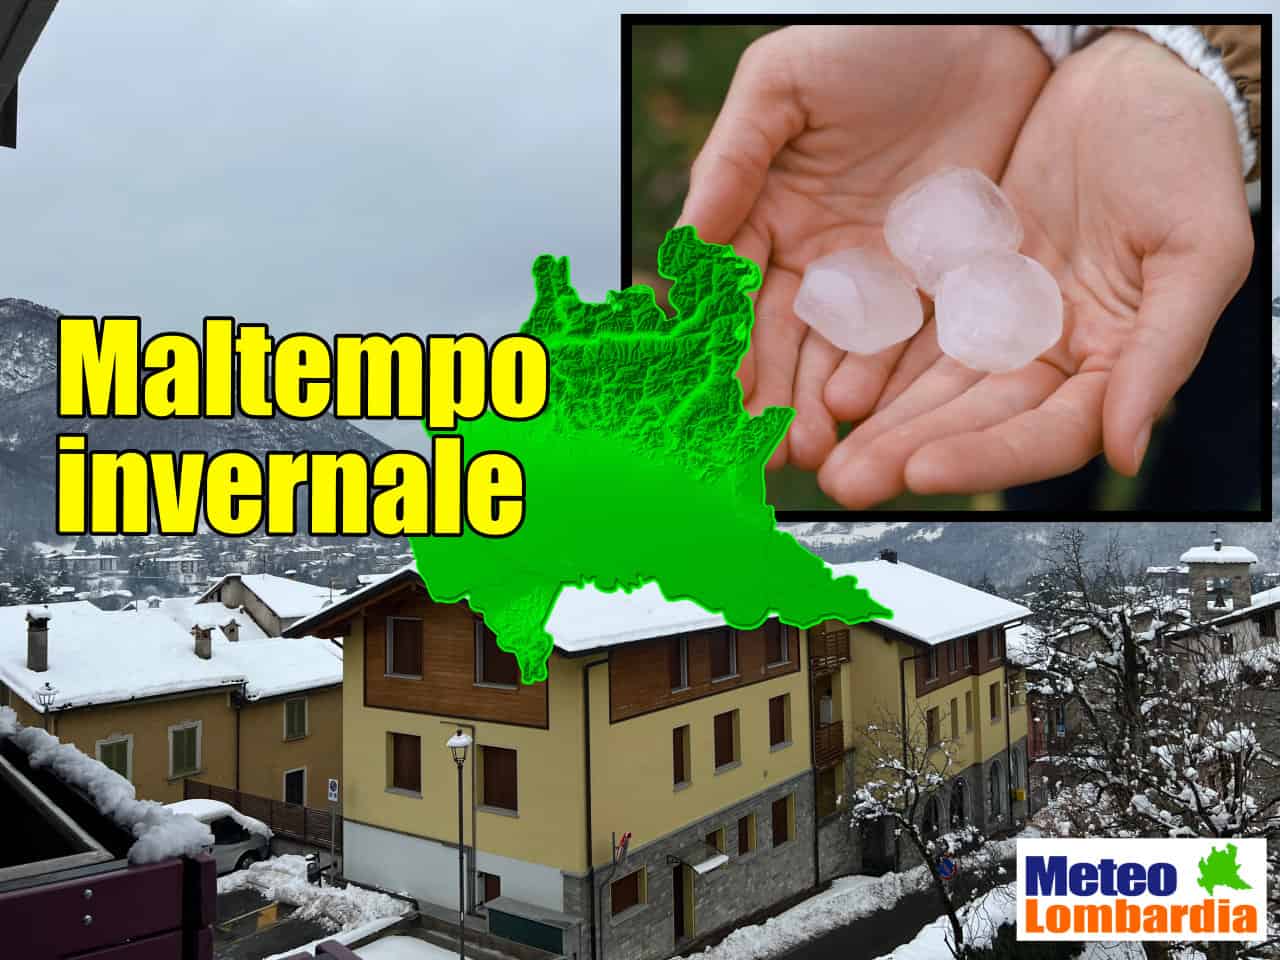 meteo invernale in lombardia - Meteo Lombardia, innevate le Alpi e le Prealpi sino a quote molto basse